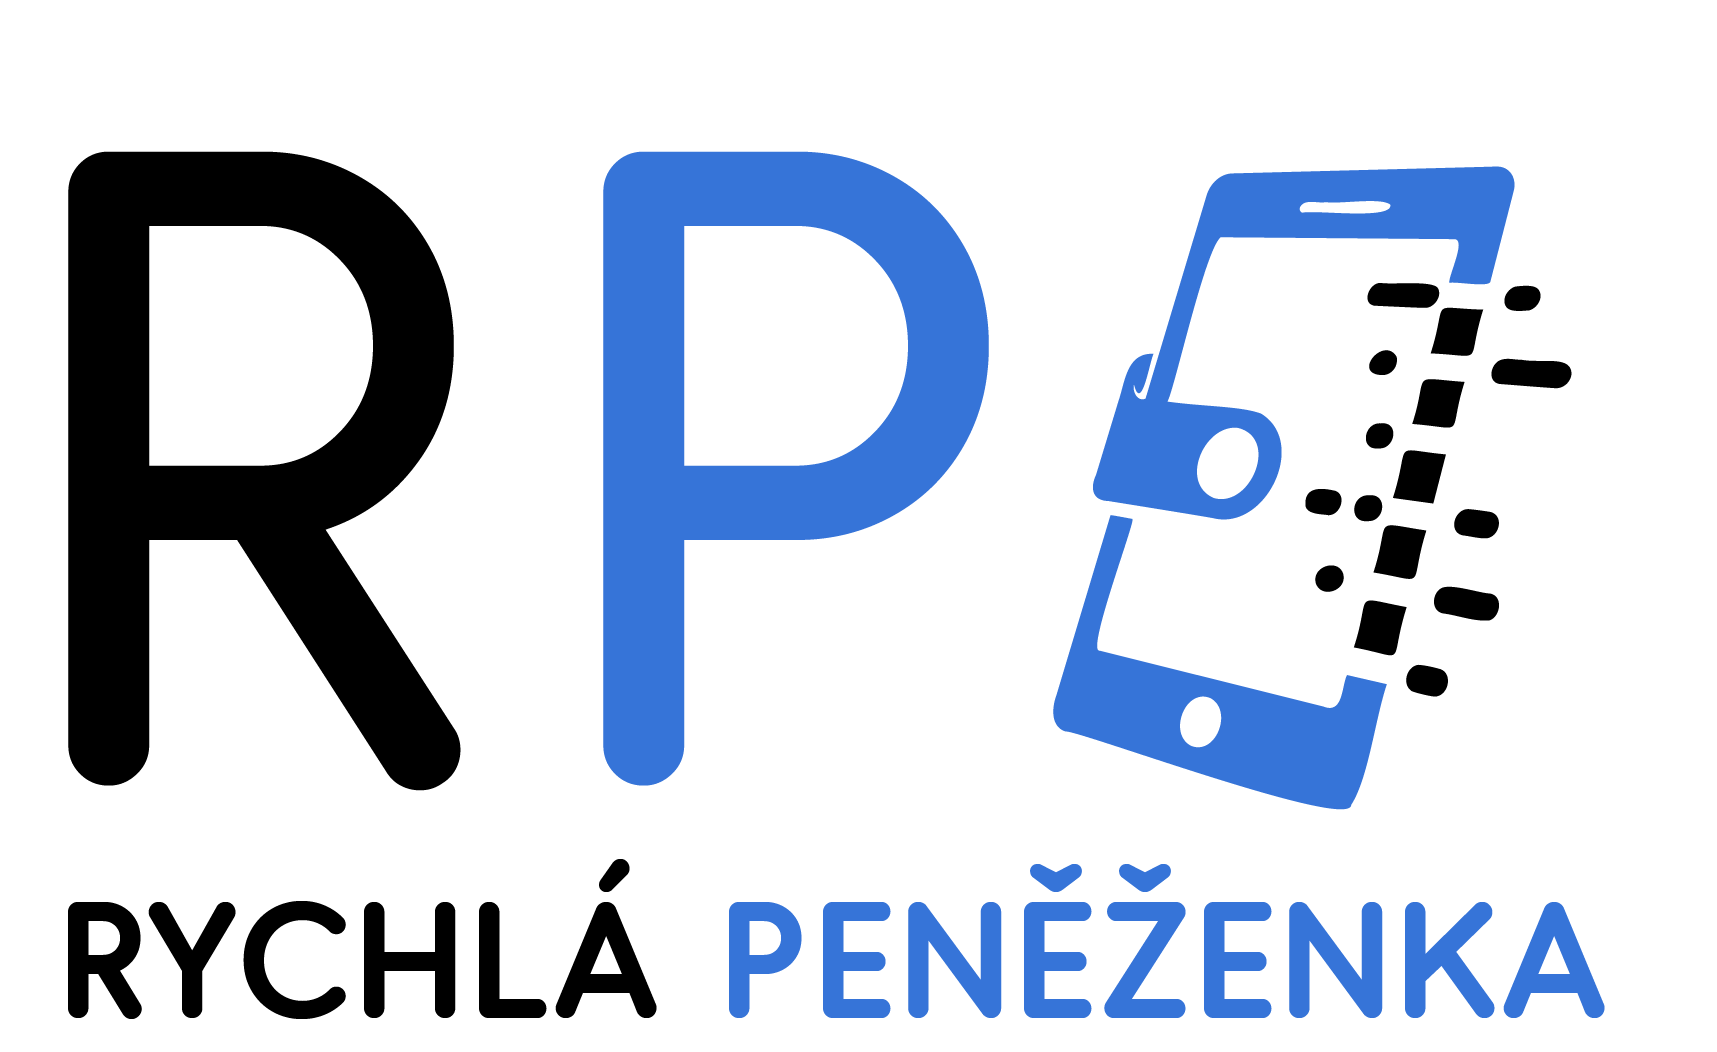 Rychlápeněženka logo